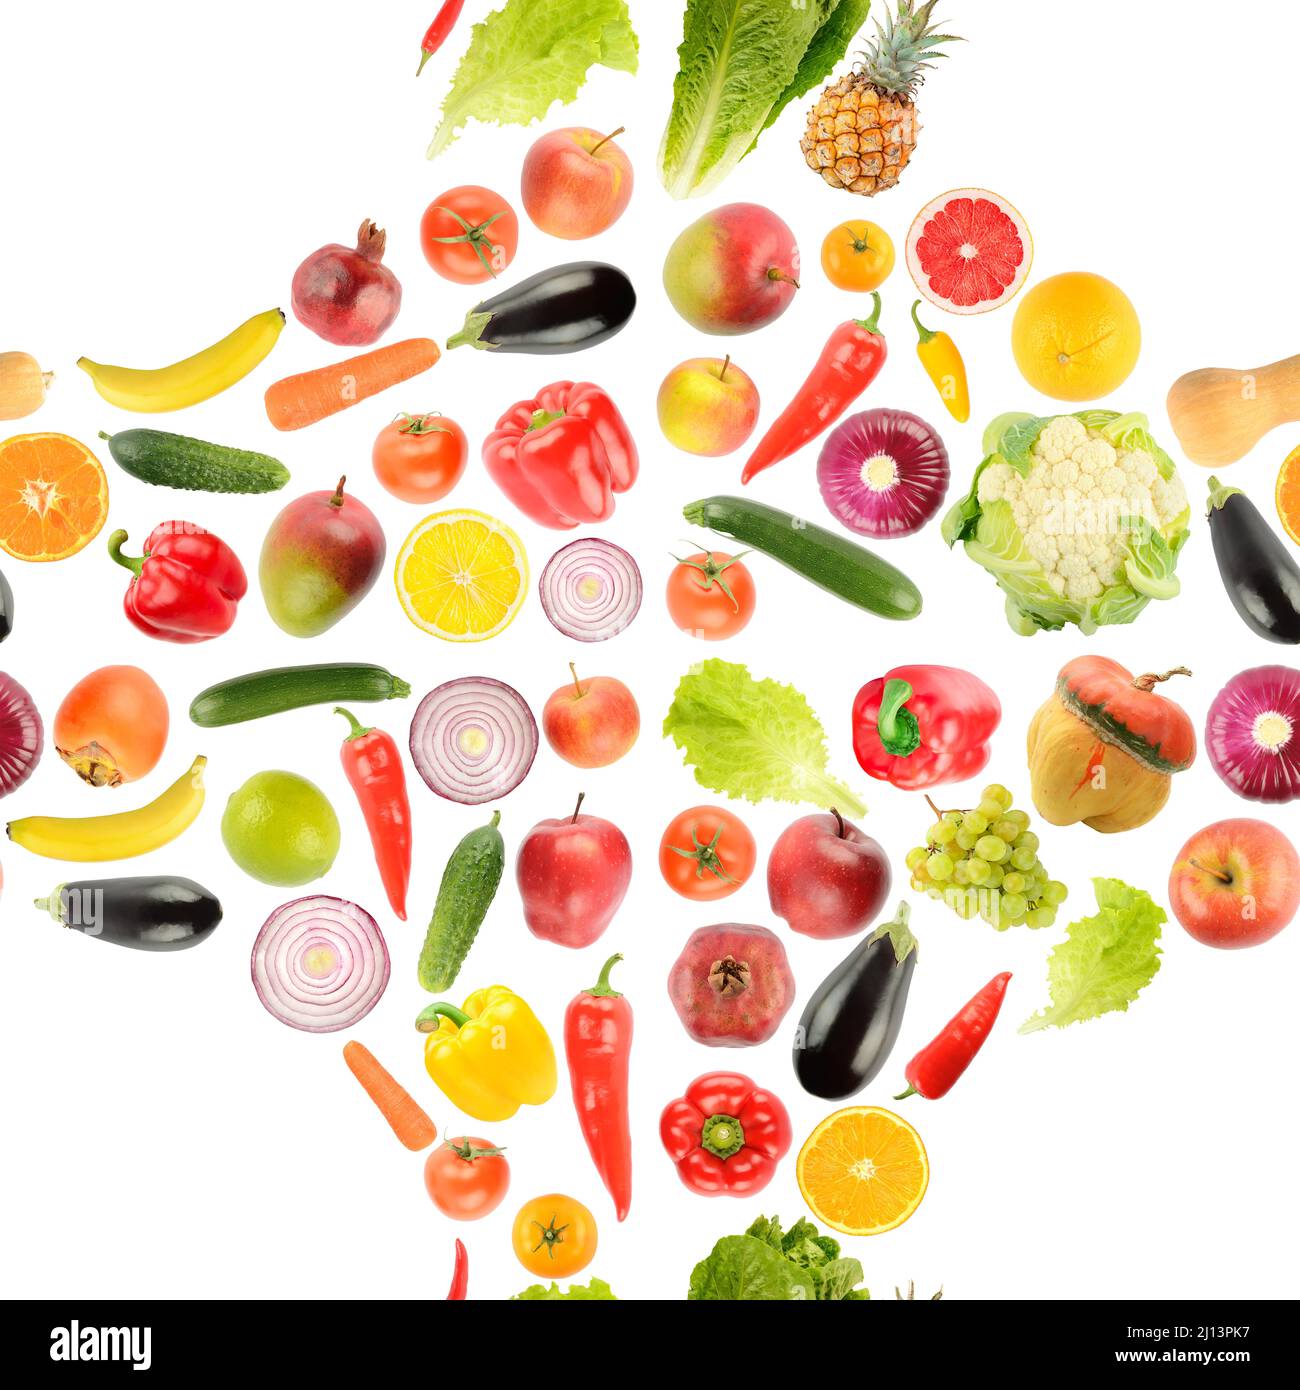 Motif sans couture provenant de fruits et légumes frais et lumineux, isolé sur fond blanc. Banque D'Images